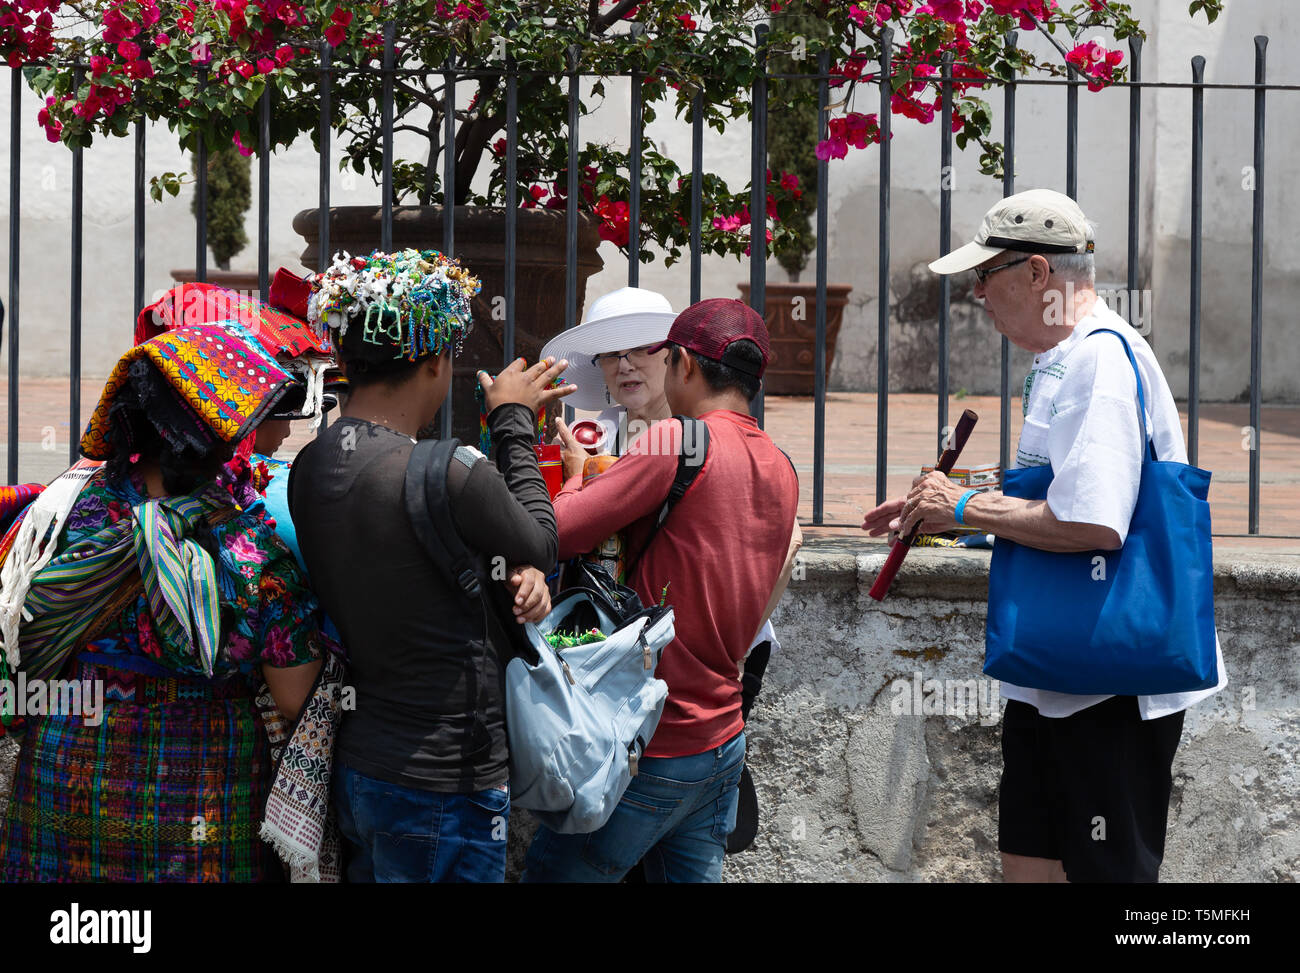 Straßenverkäufer und Touristen, Antigua Guatemala Mittelamerika - Touristen von Straßenhändlern belästigt zu werden; Beispiel für die Gefahren der Reise- und Tourismusbranche Stockfoto